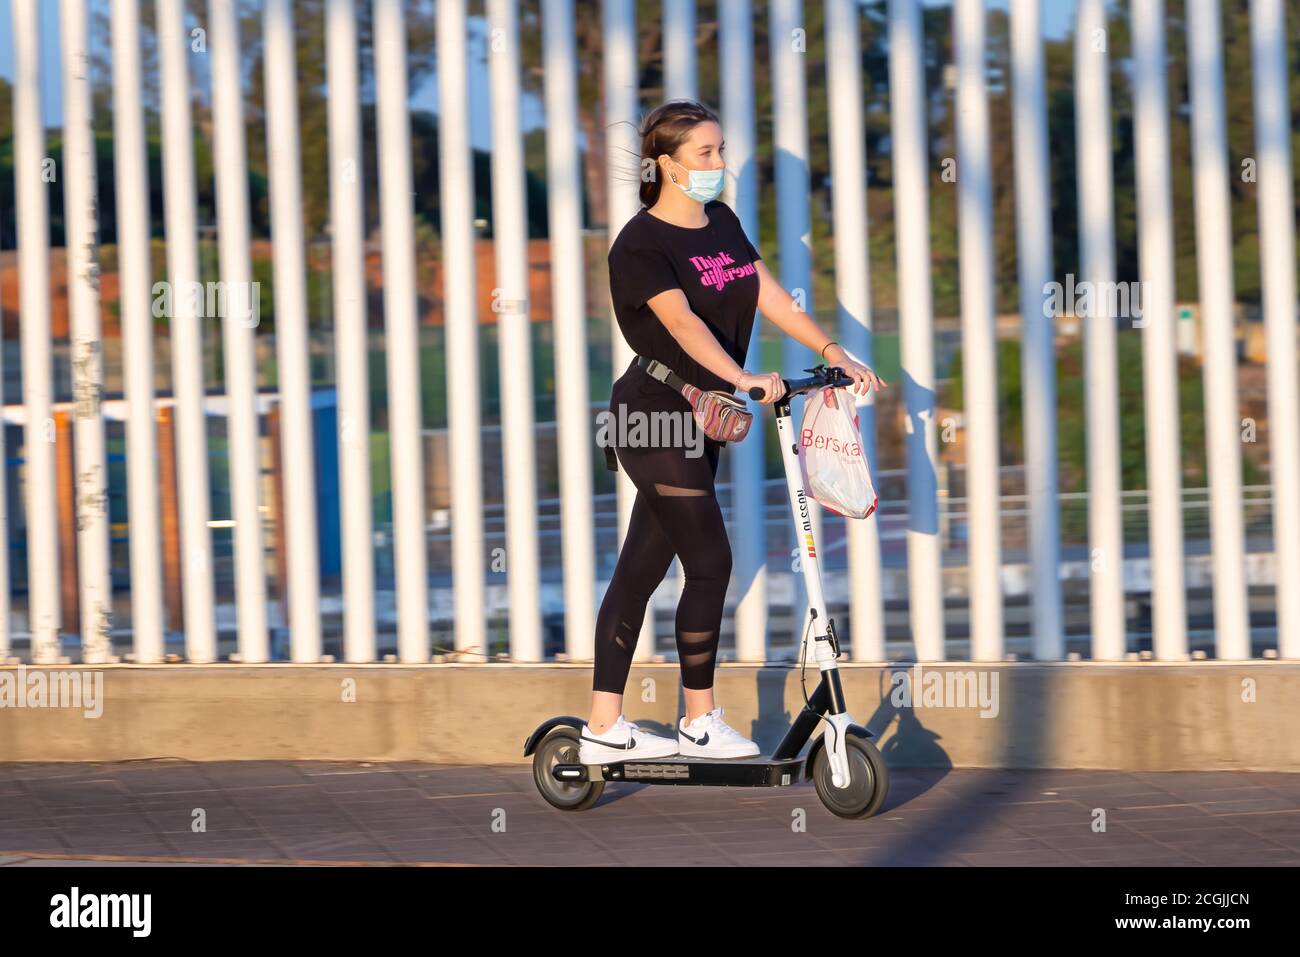 Huelva, Spagna - 10 settembre 2020: Giovane donna che cavalca uno scooter elettrico sul marciapiede indossando una maschera protettiva a causa del coronavirus covid-19 Foto Stock